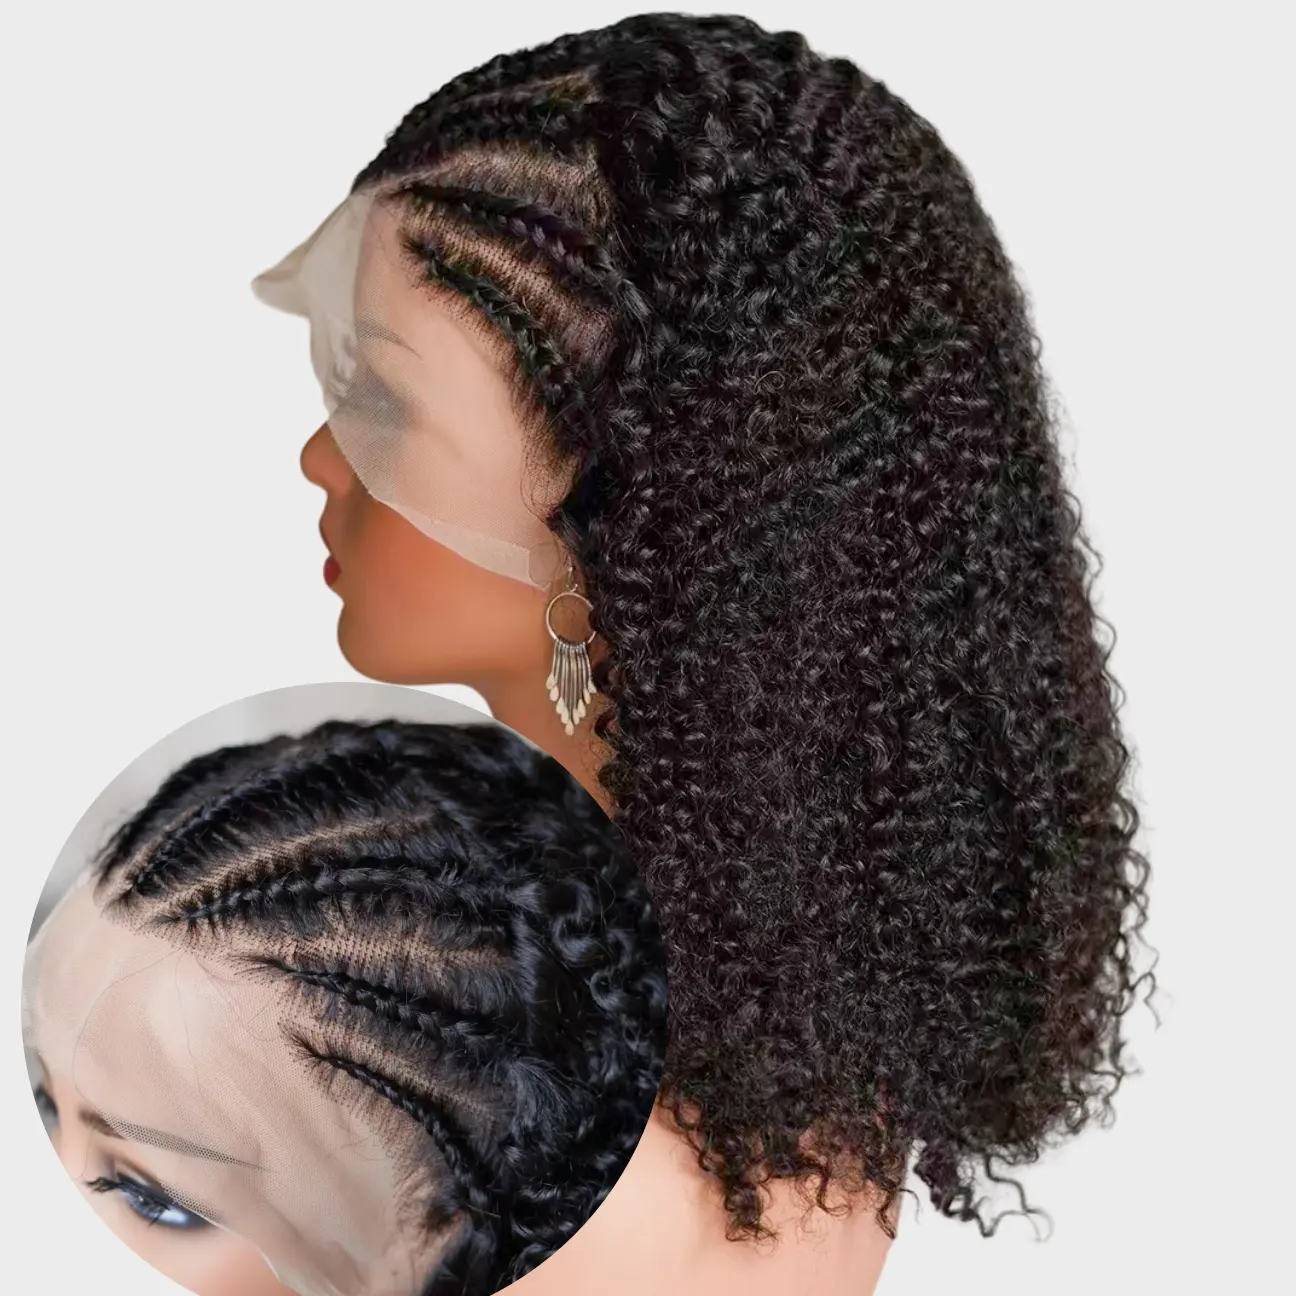 Peruca trançada de cabelo humano para mulheres negras, peruca encaracolada e ondulada para mulheres brasileiras virgens, cutícula alinhada, cabelo humano